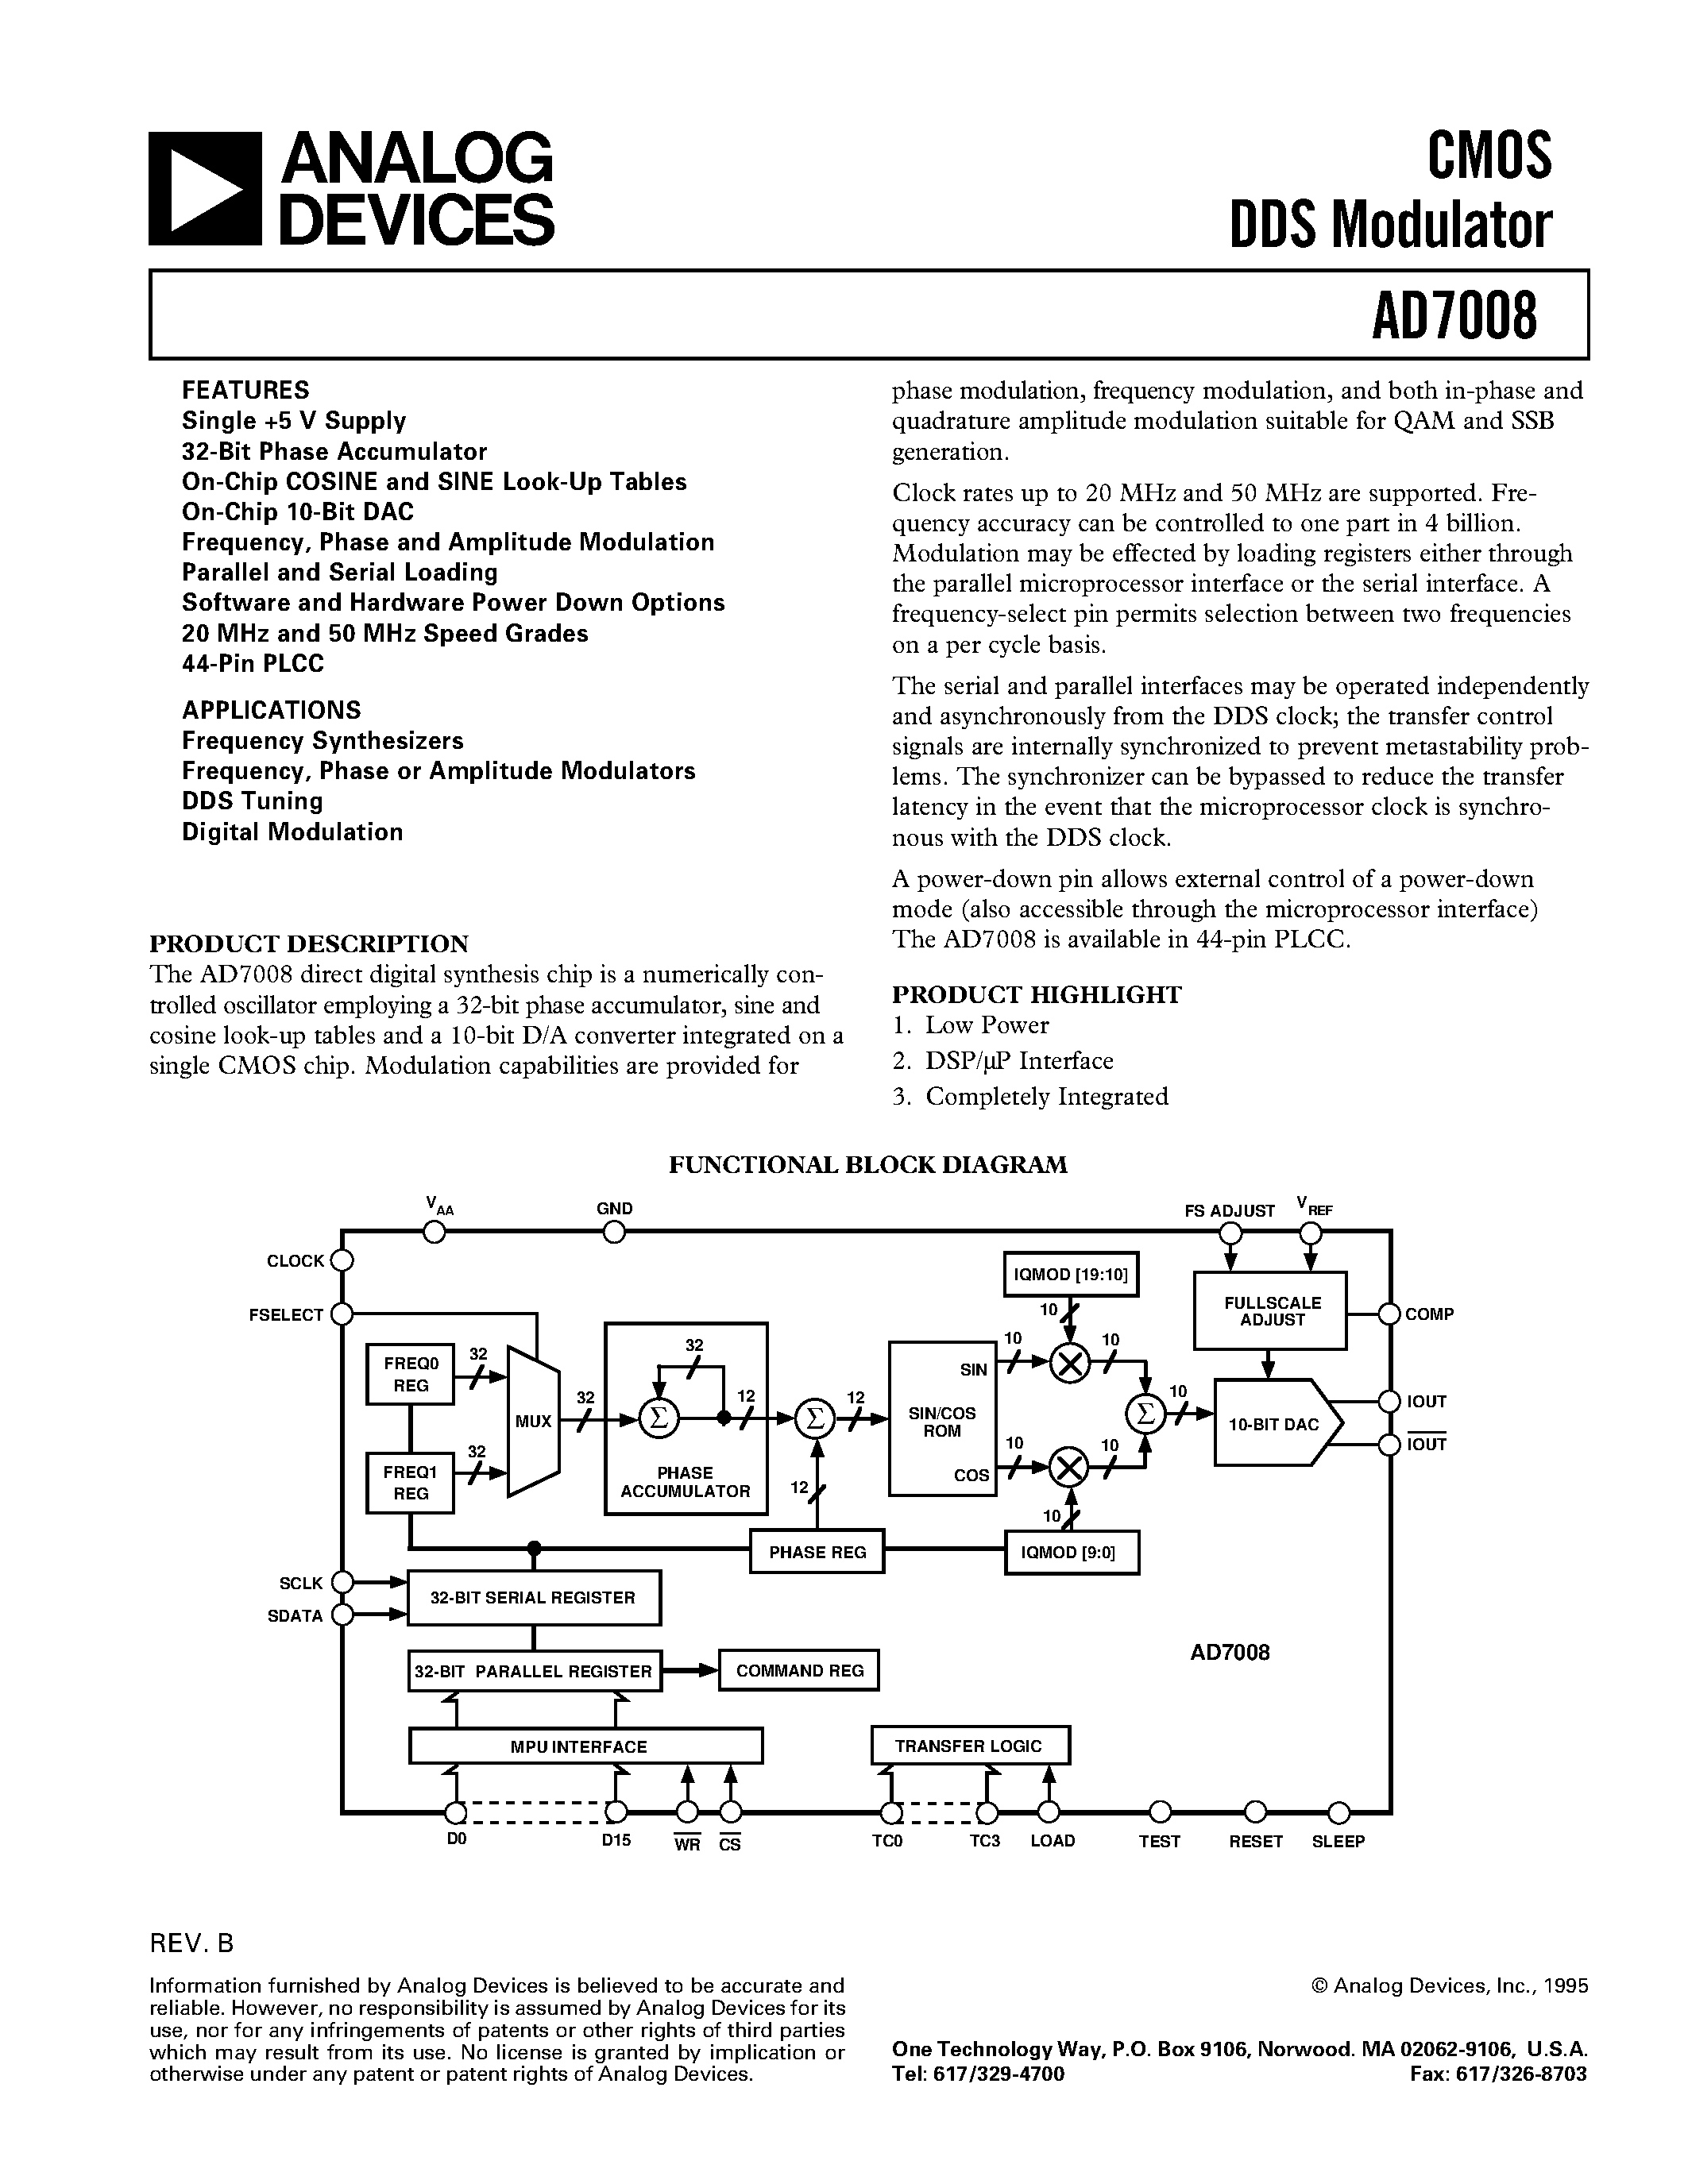 Даташит AD7008 - CMOS DDS Modulator страница 1